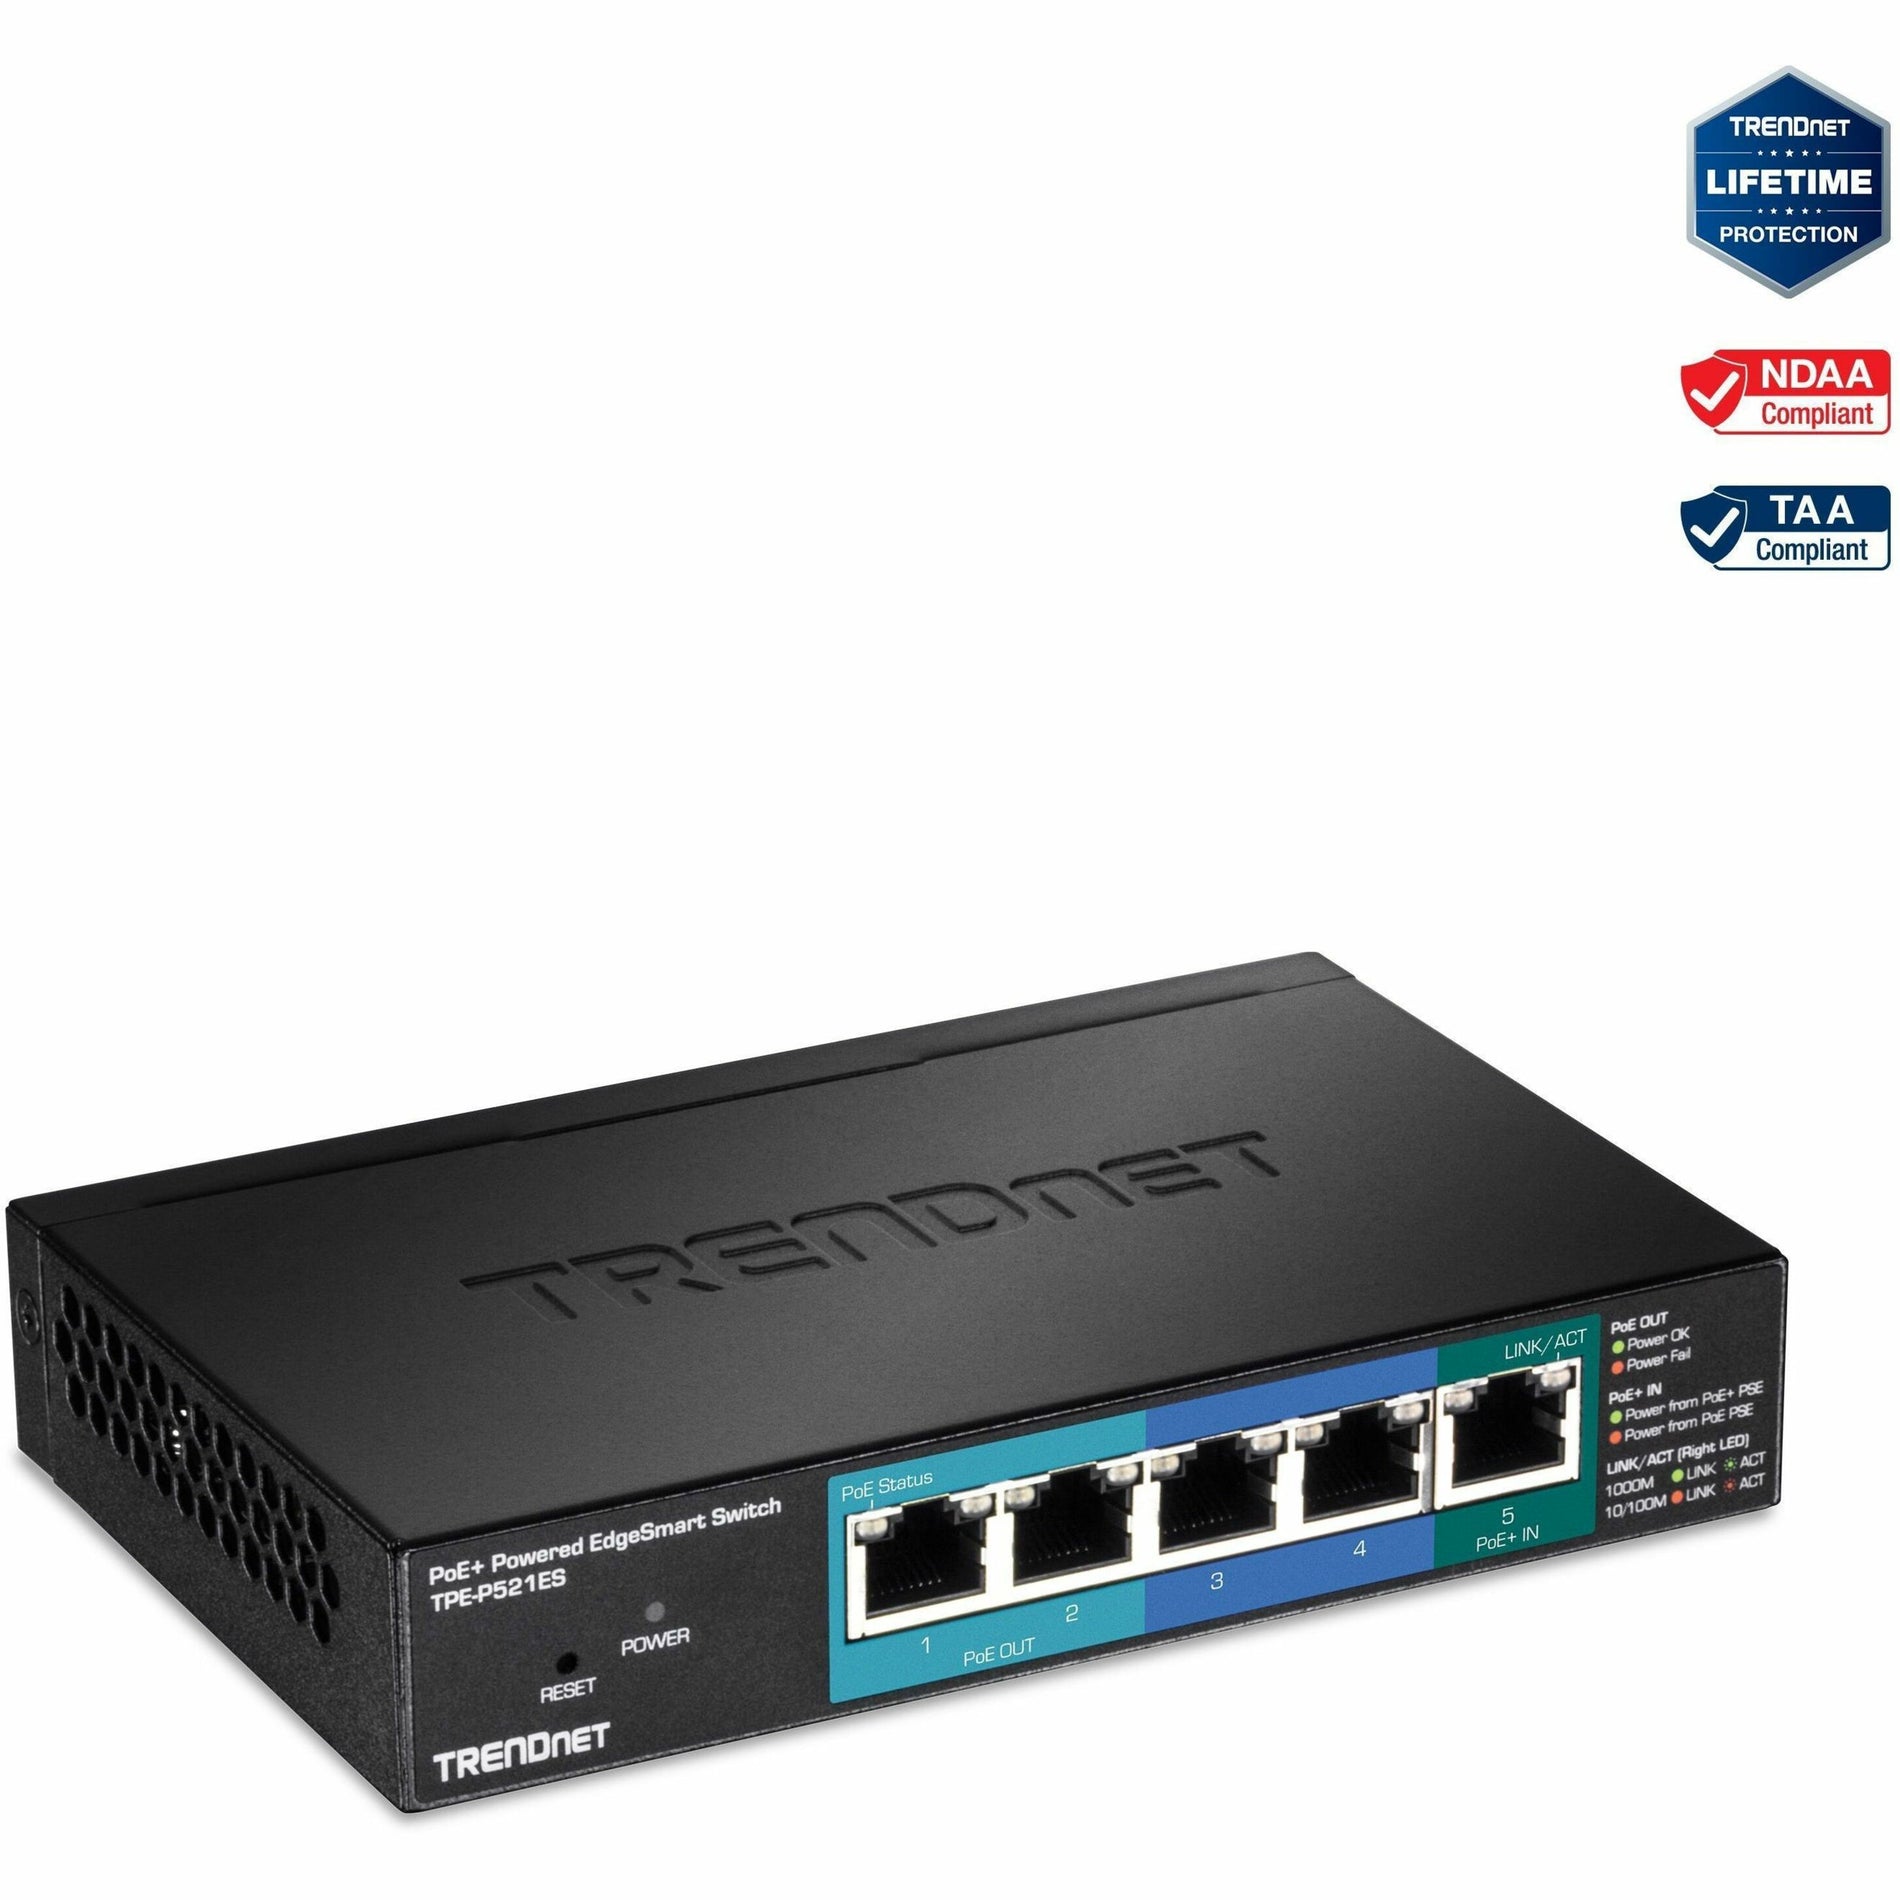 TRENDnet TPE-P521ES 5ポートギガビットPoE+パワードEdgeSmartスイッチ with PoEパススルー 18W PoE予算 10Gbpsスイッチング容量 TRENDnet トレンドネット